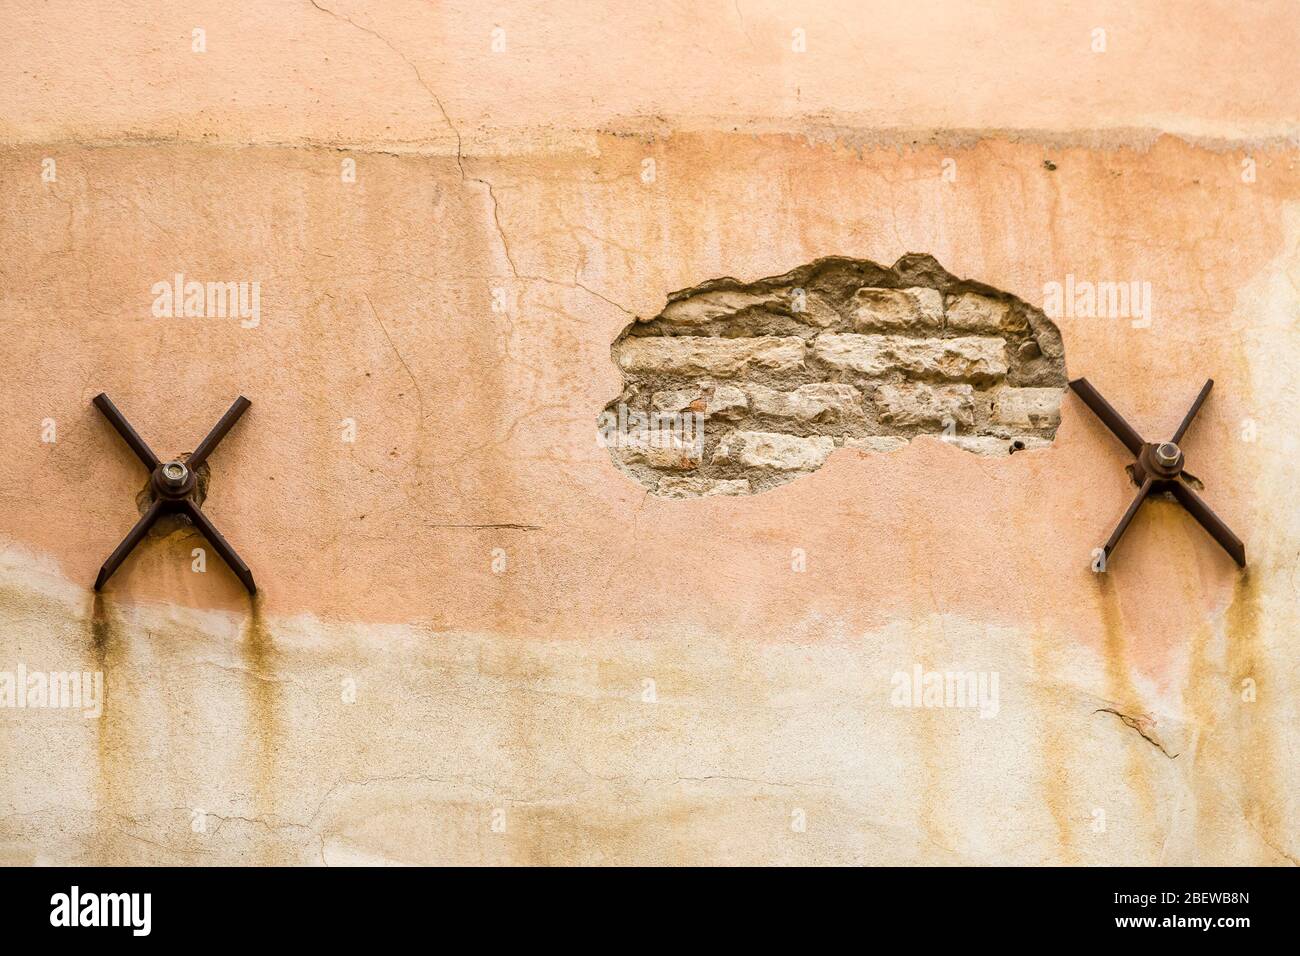 Die abgekratzte Wand des alten Gebäudes mit rostigen Eisenspikes der Balken, um das Haus zu stabilisieren Stockfoto